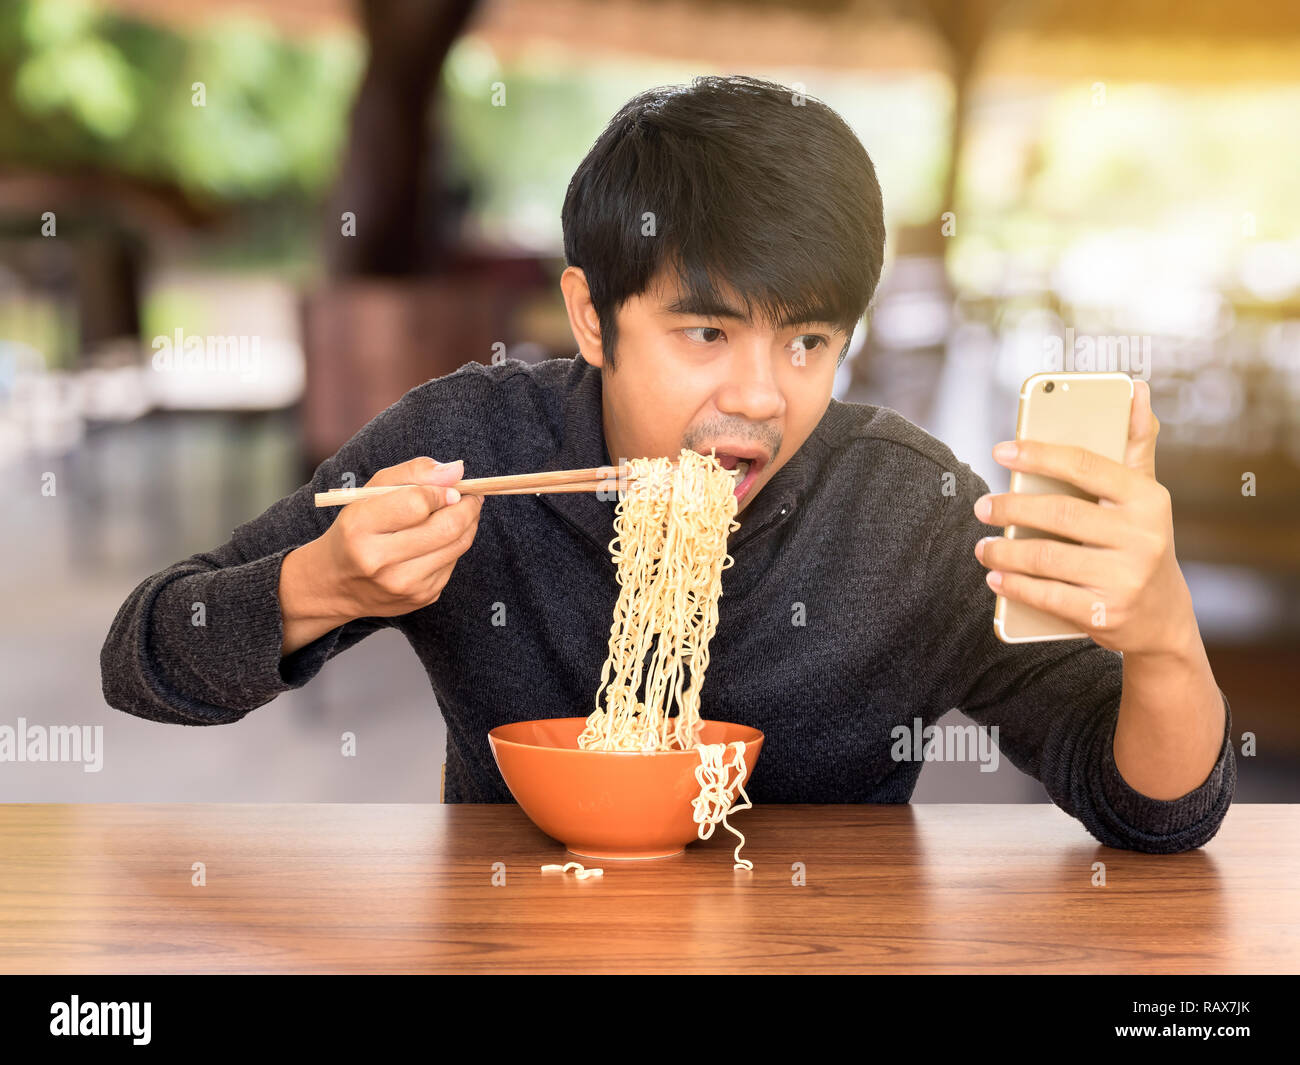 Mann essen chinesische Nudelsuppe monströs während der Suche und Verwendung von Smartphones. Konzept der Smartphone sucht, phubbing oder soziales Netzwerk Probleme Stockfoto